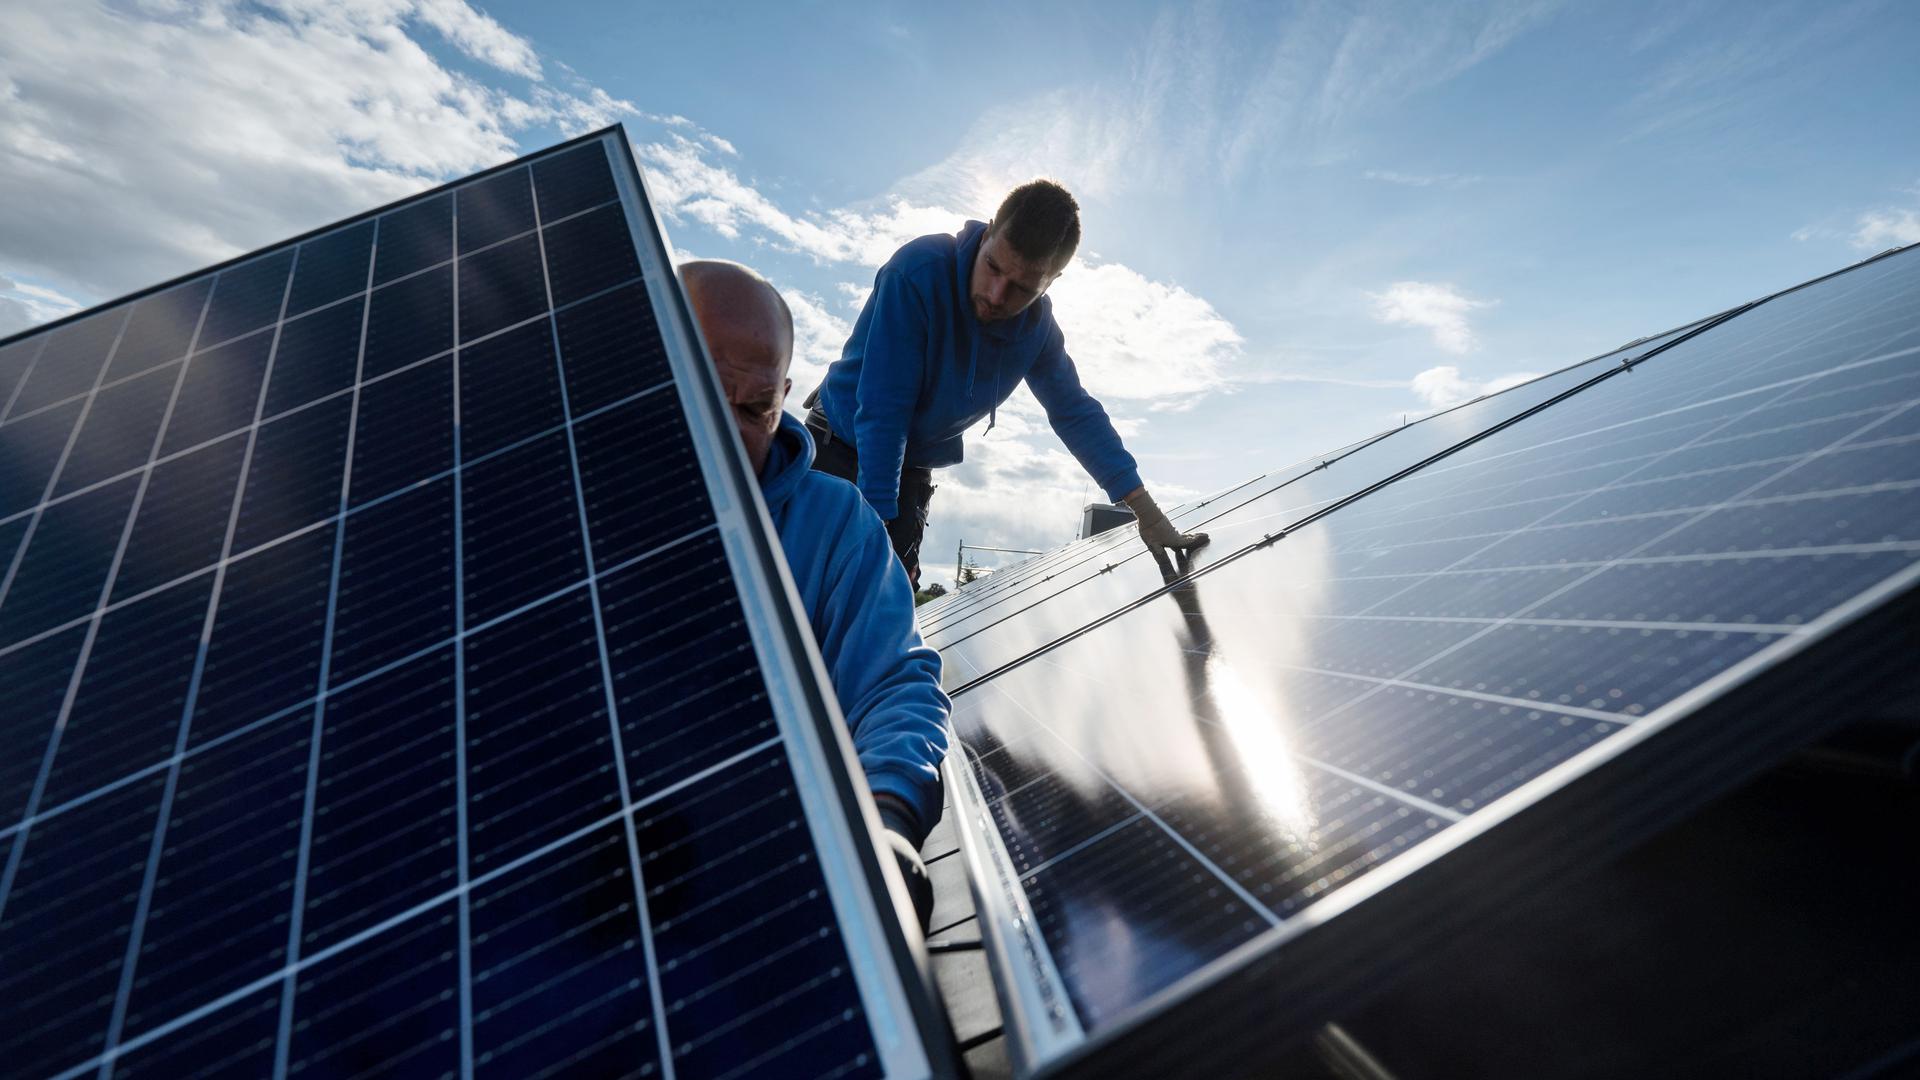 Strom vom Dach: In Zeiten der Energiekrise wollen viele Menschen eine Photovoltaik-Anlage. Dabei sollte man sich auch mit dem Thema Versicherungsschutz beschäftigen.